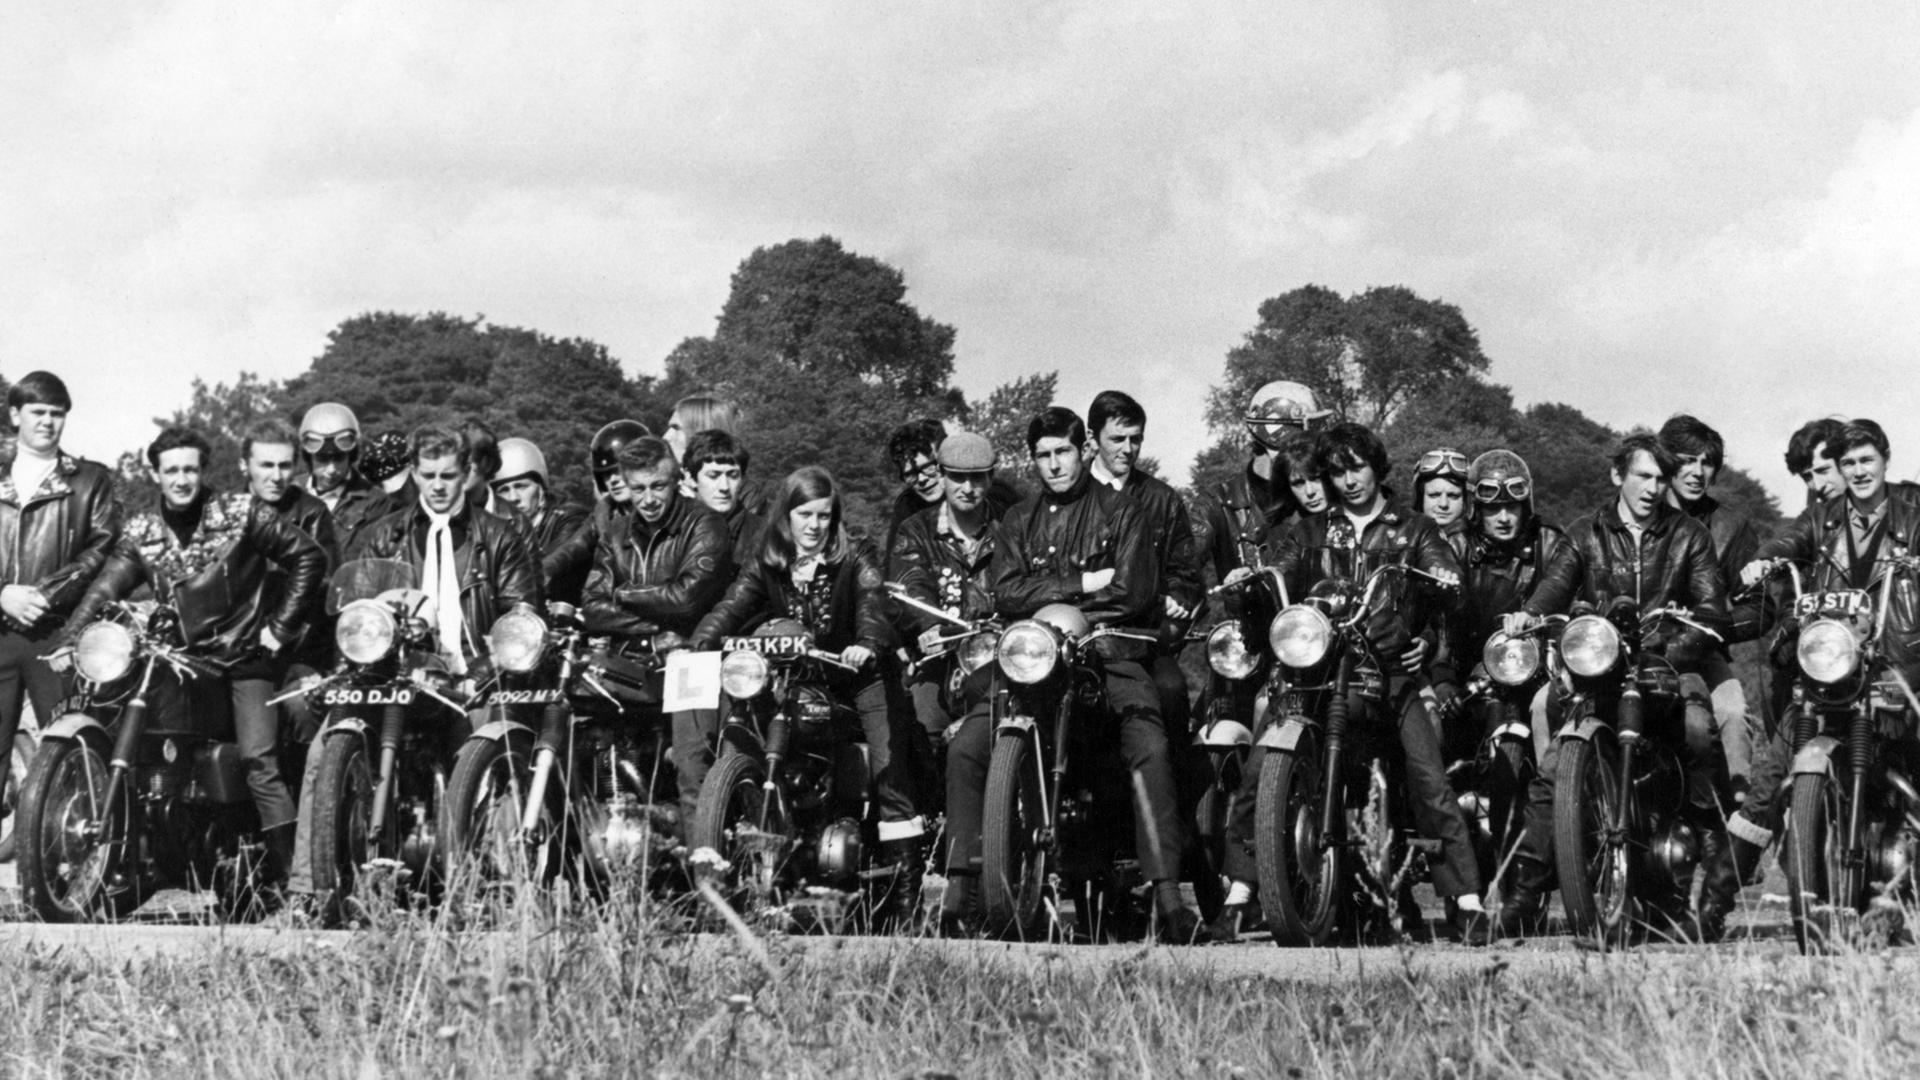 Rockergruppe posiert mit Motorrädern in den 1970er Jahren für ein Foto. 